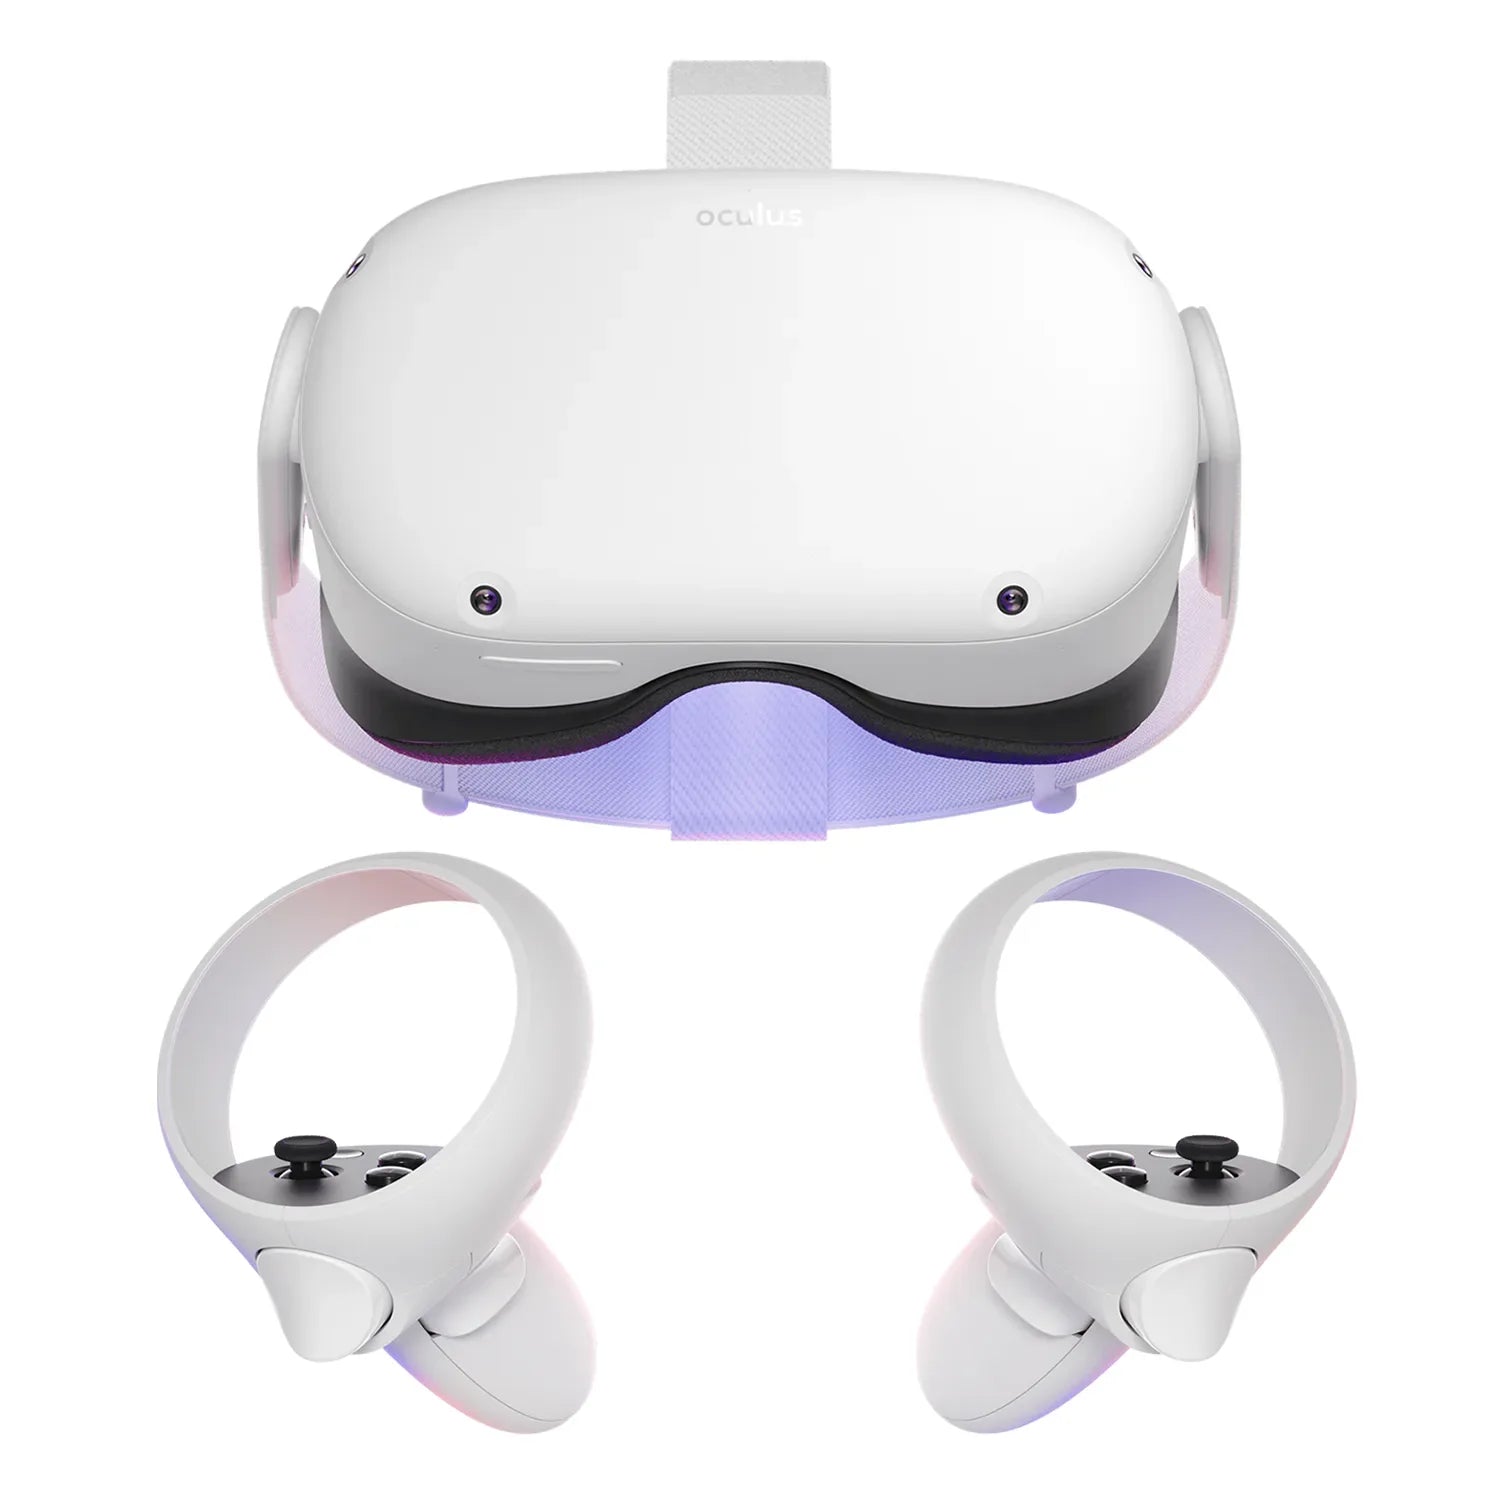 Billede af Meta Quest 2 VR Headset 128GB - Brugt - Meget god stand